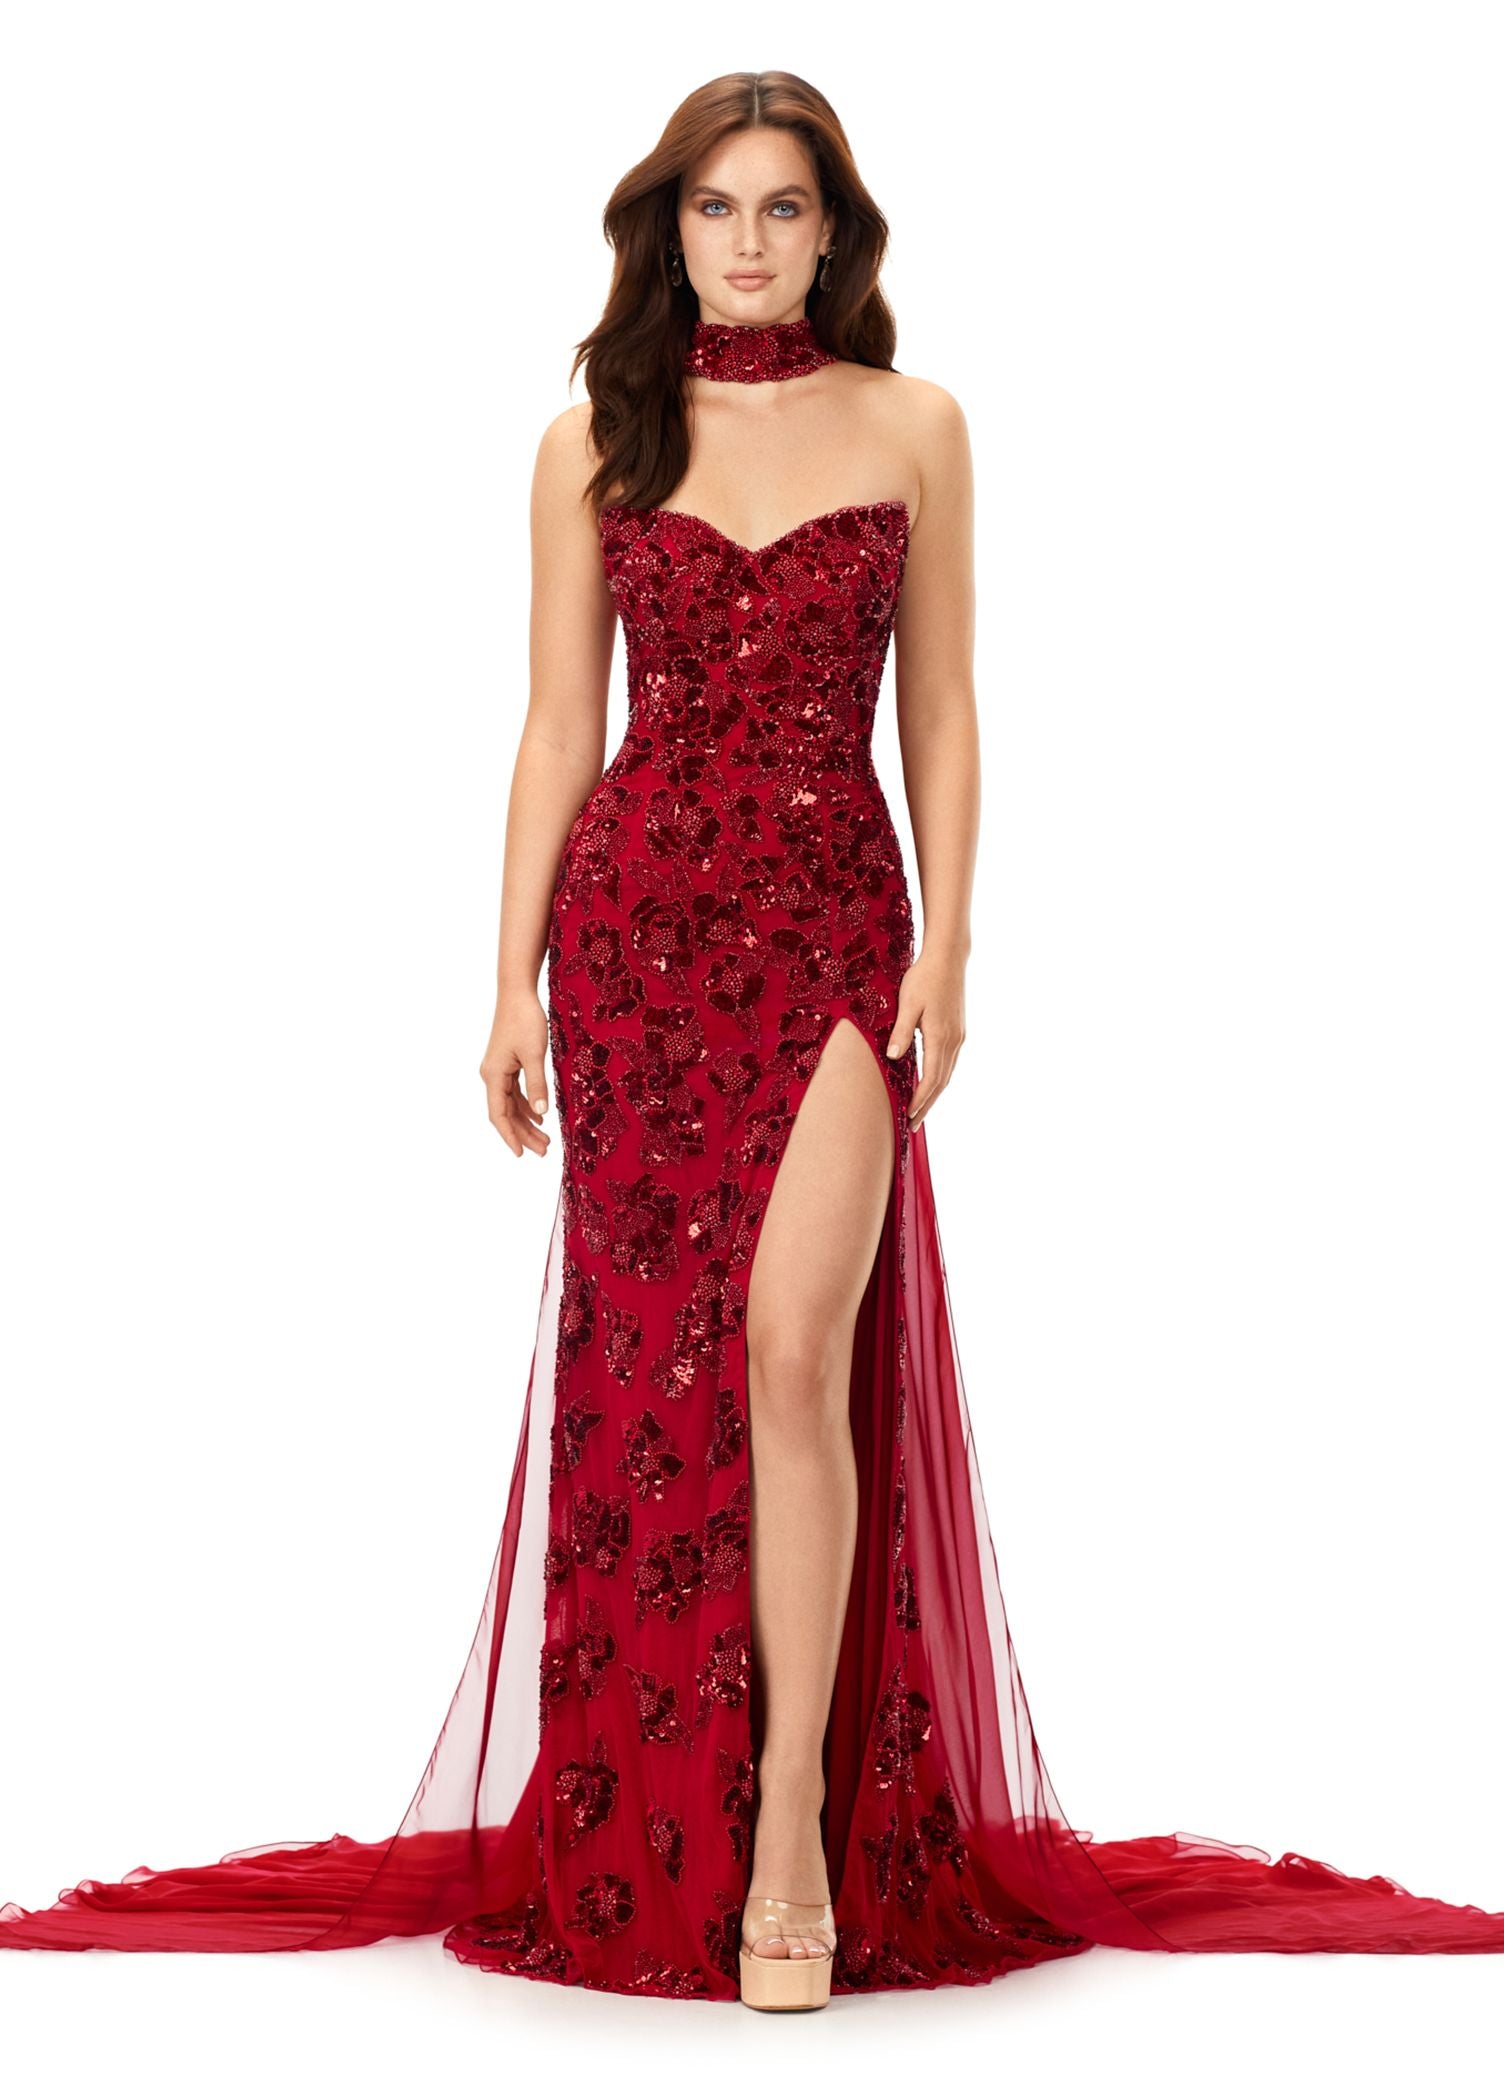 Ashley Lauren 11488 Long Prom Dress Fully Beaded Strapless Gown